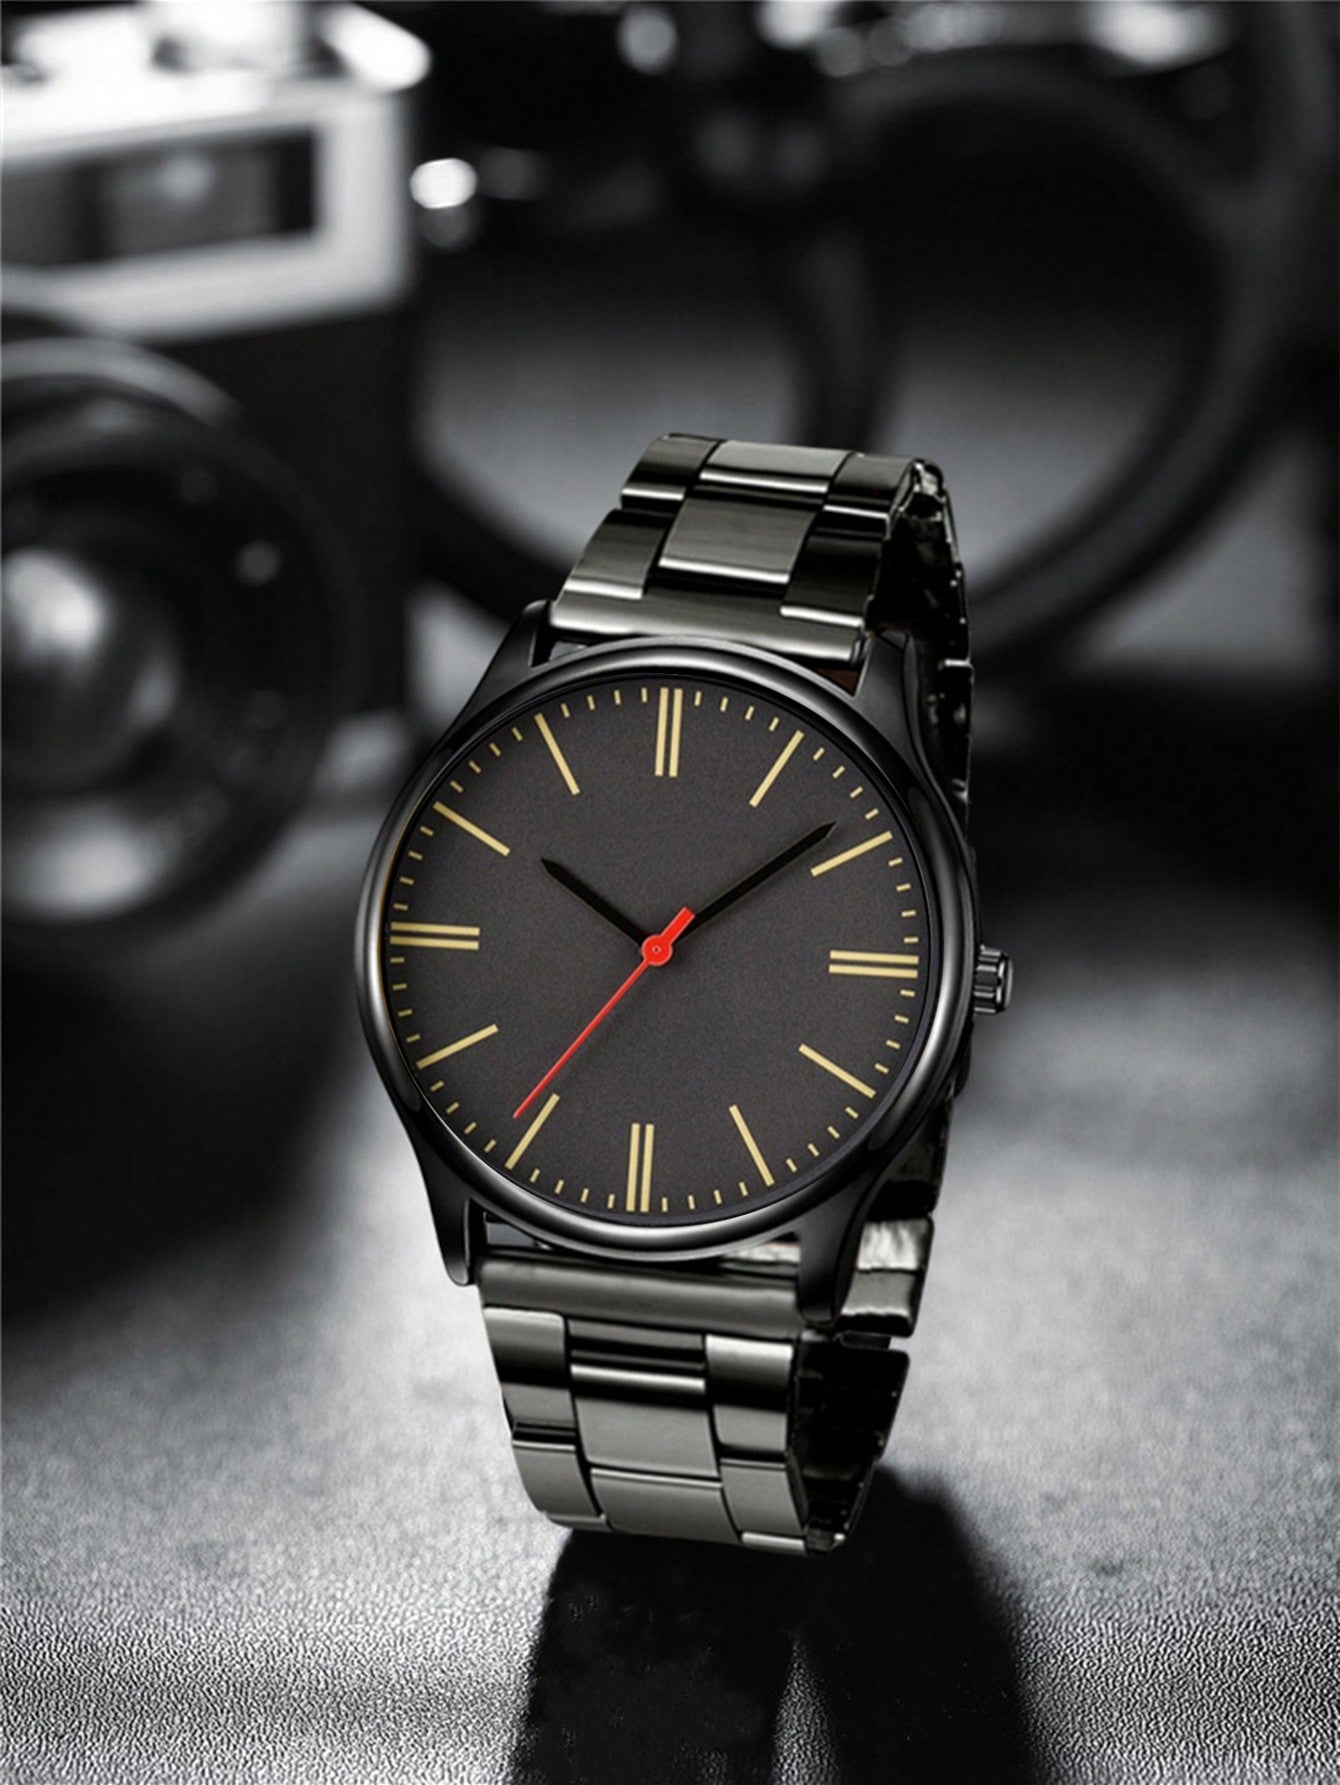 Casual Men's Simple Trendy Sport Quartz Watch Set With 2pcs Watch Bracelets, Suitable For Daily Wear